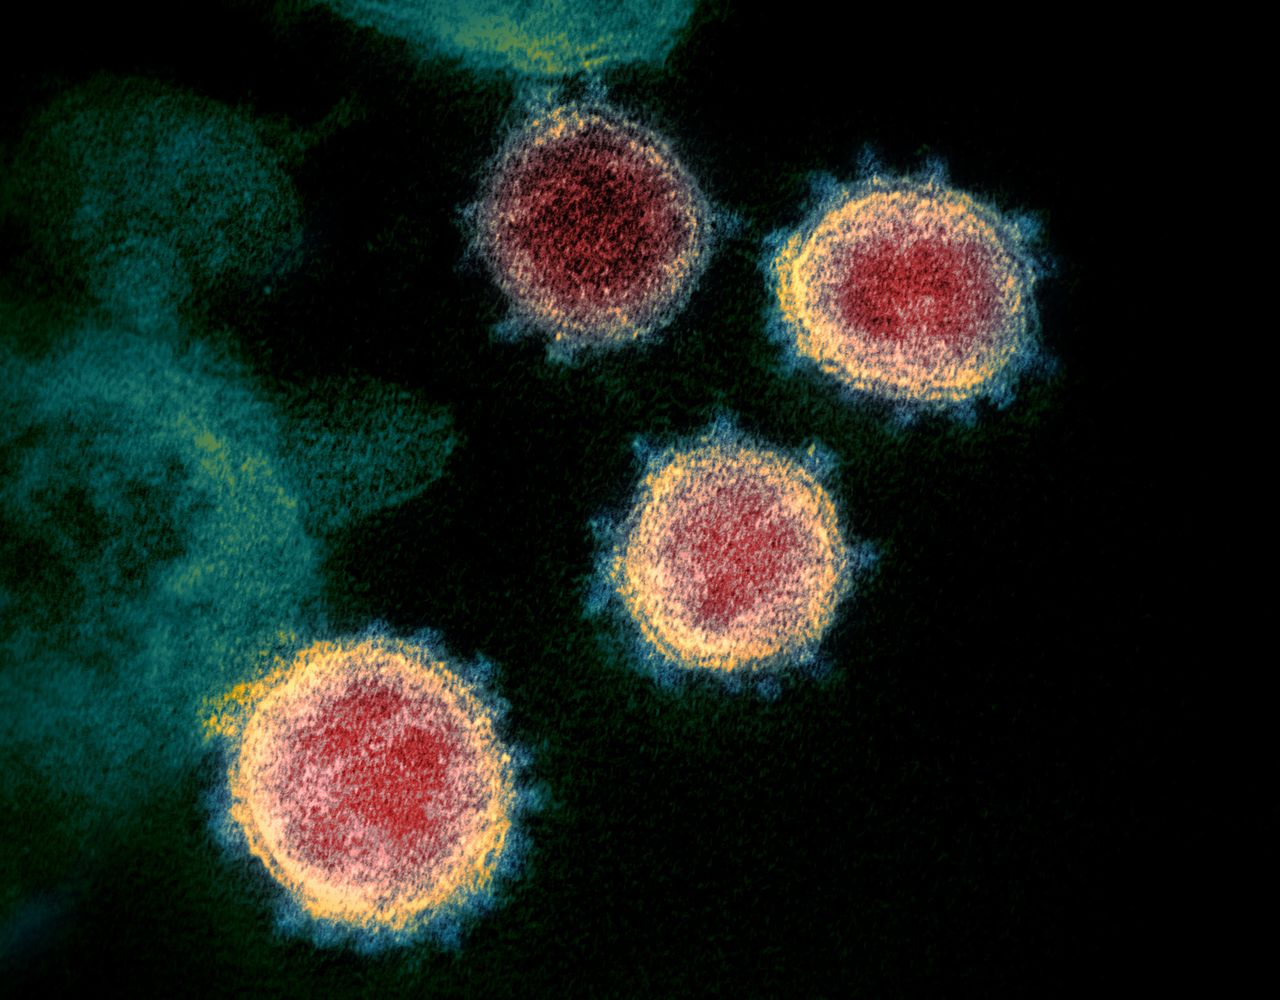 Koronawirus może rozprzestrzeniać się szybciej niż sądzili naukowcy. Nowe wnioski